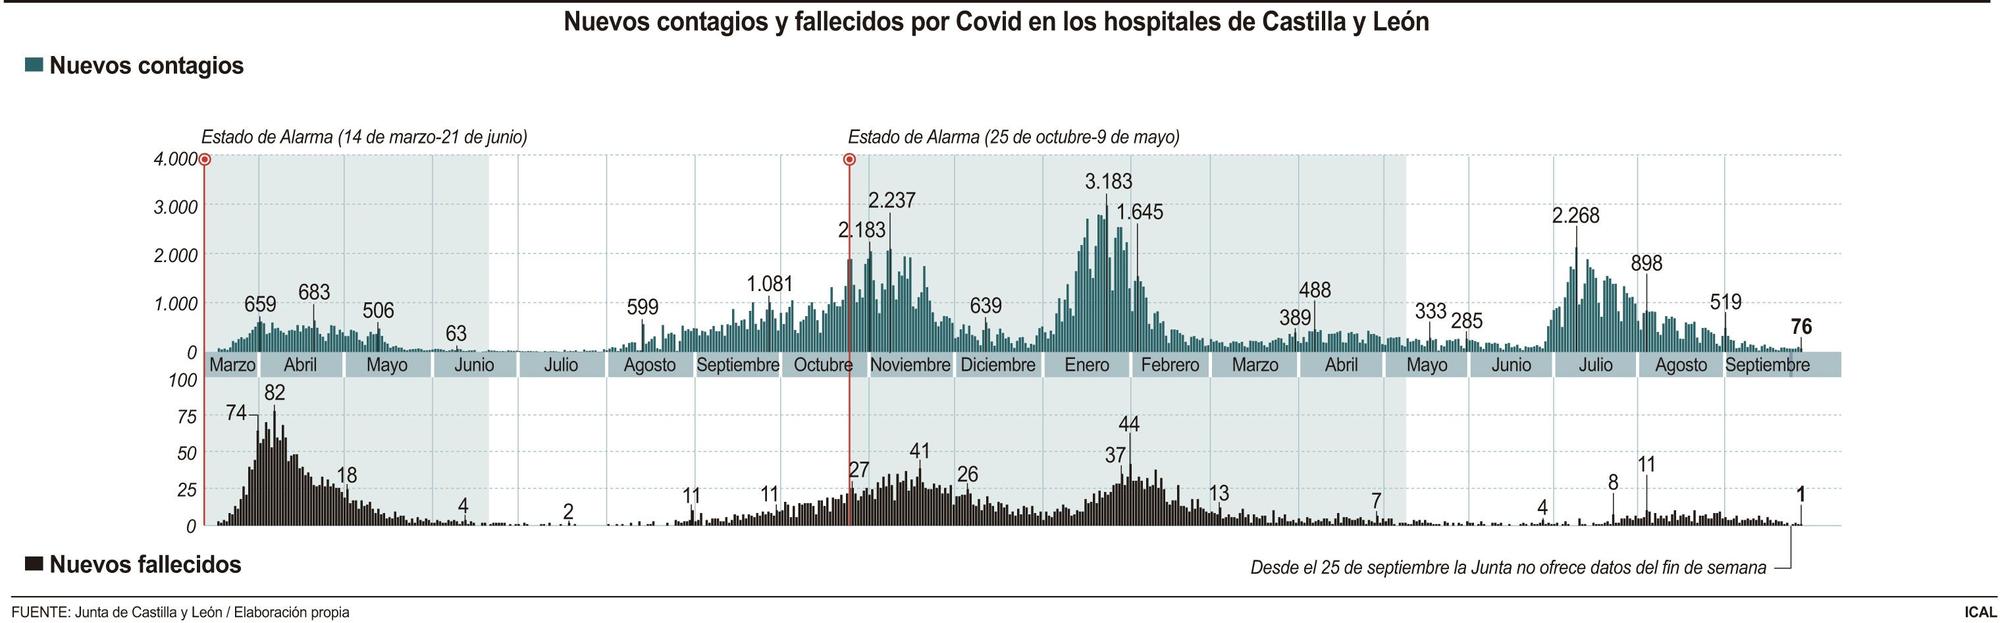 Nuevos contagios y fallecidos por coronavirus en hospitales de Castilla y León.